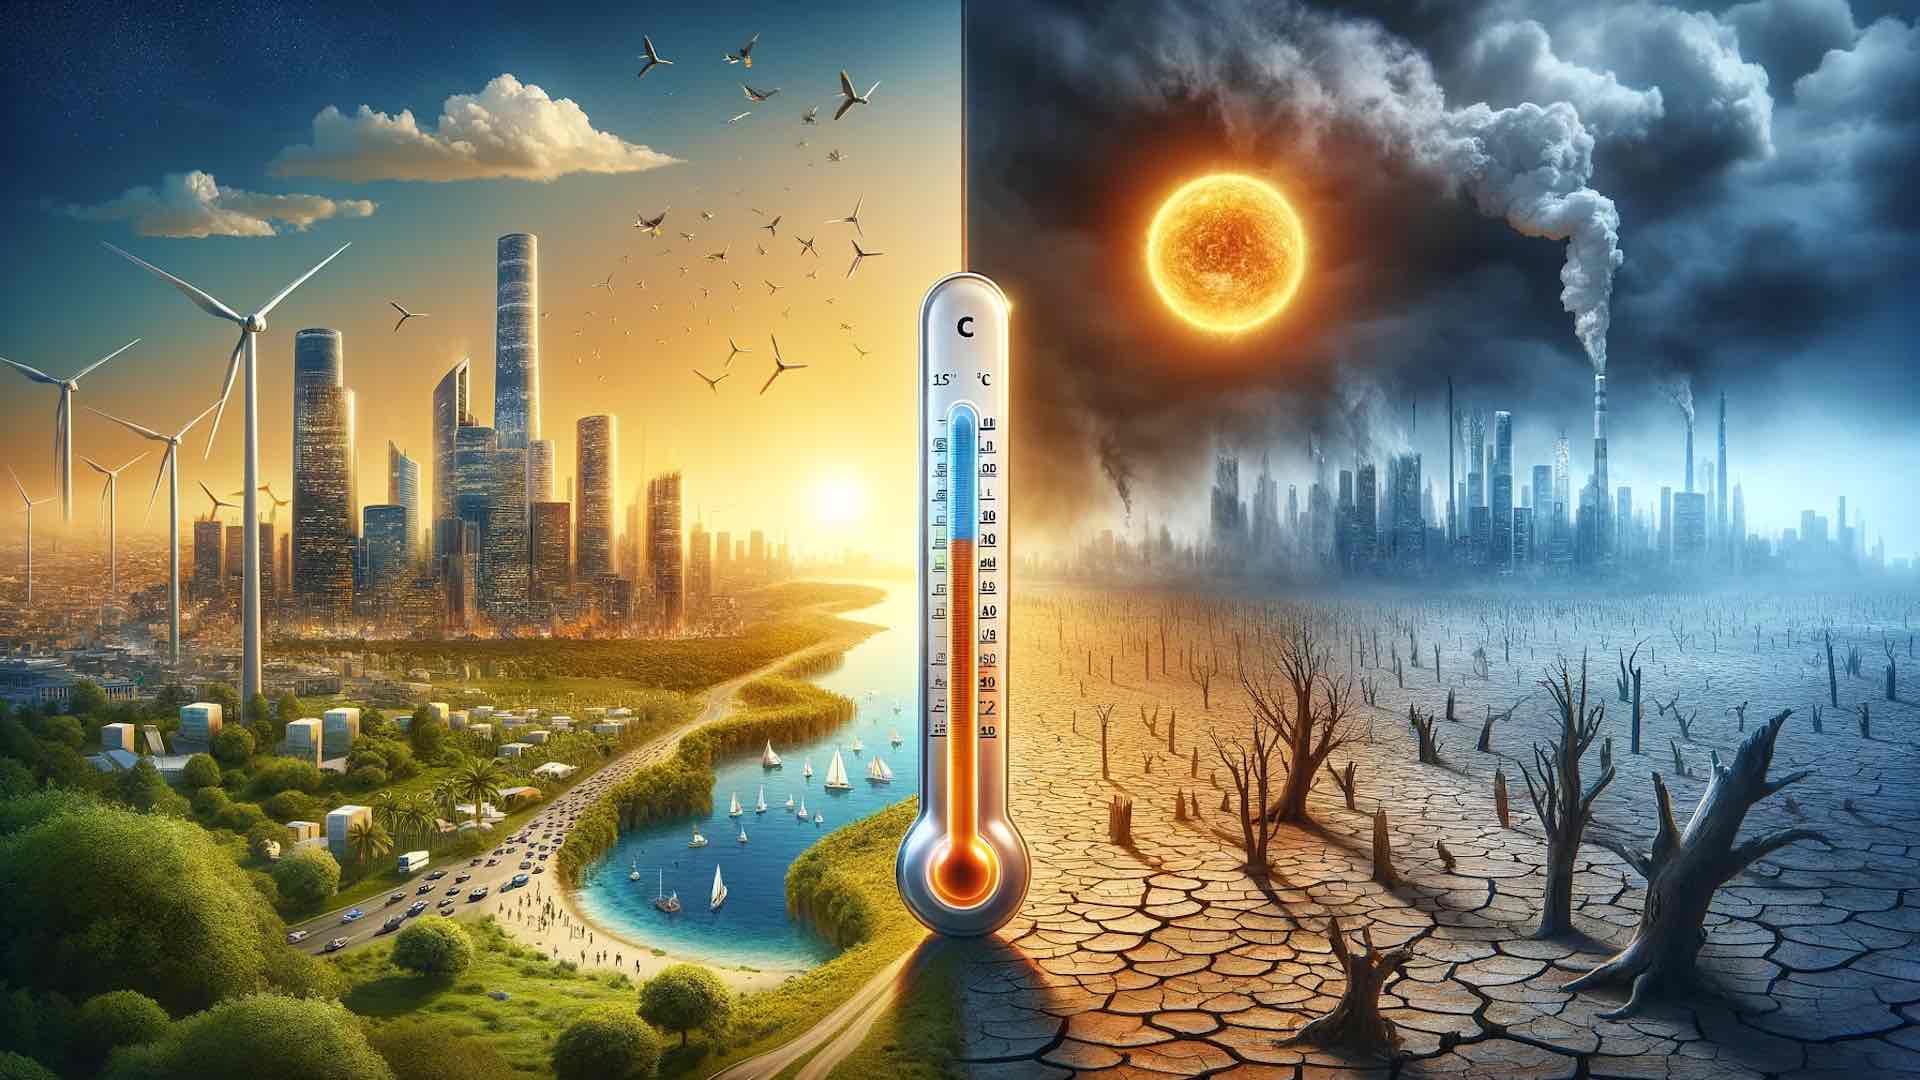 अध्ययन द्वारा भविष्यवाणी की गई 1.5C वार्मिंग सीमा का आसन्न उल्लंघन